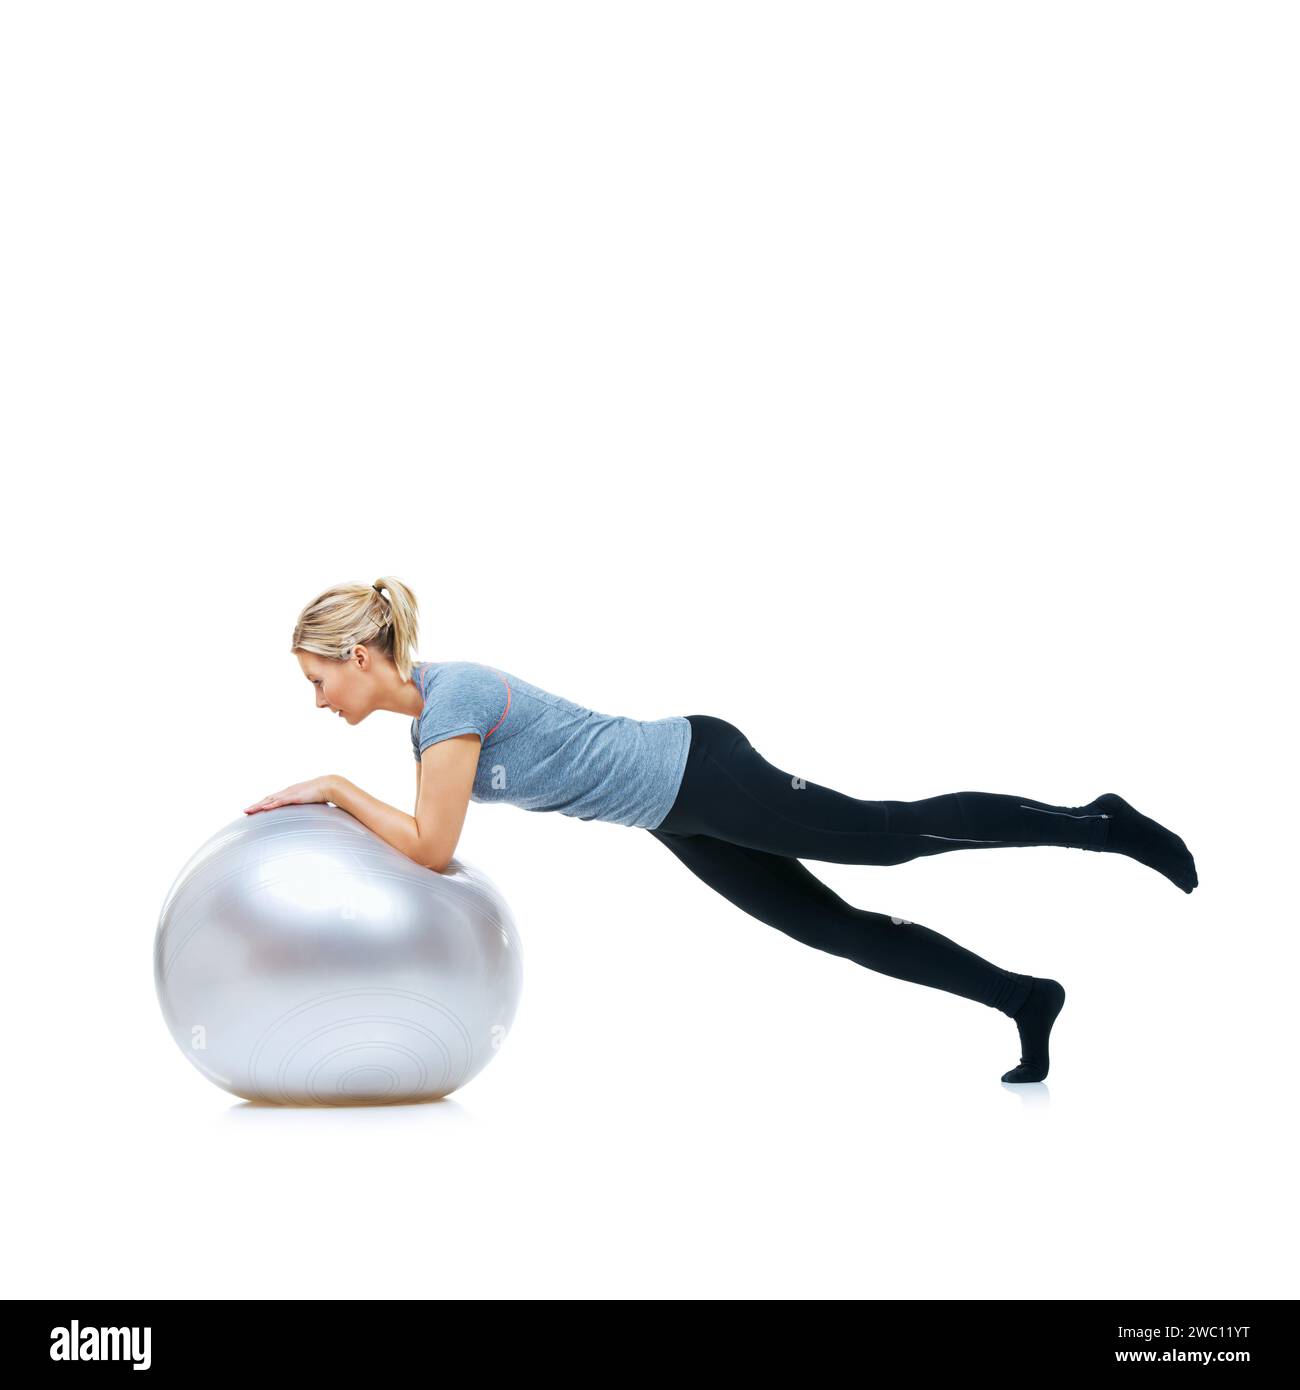 Frau, Gym Ball oder Balance im Studio für Workout, Wellness oder Mobilitätsübungen auf weißem Hintergrund. Weibliche Athletin, Trainingsgeräte oder Fitness für Stockfoto